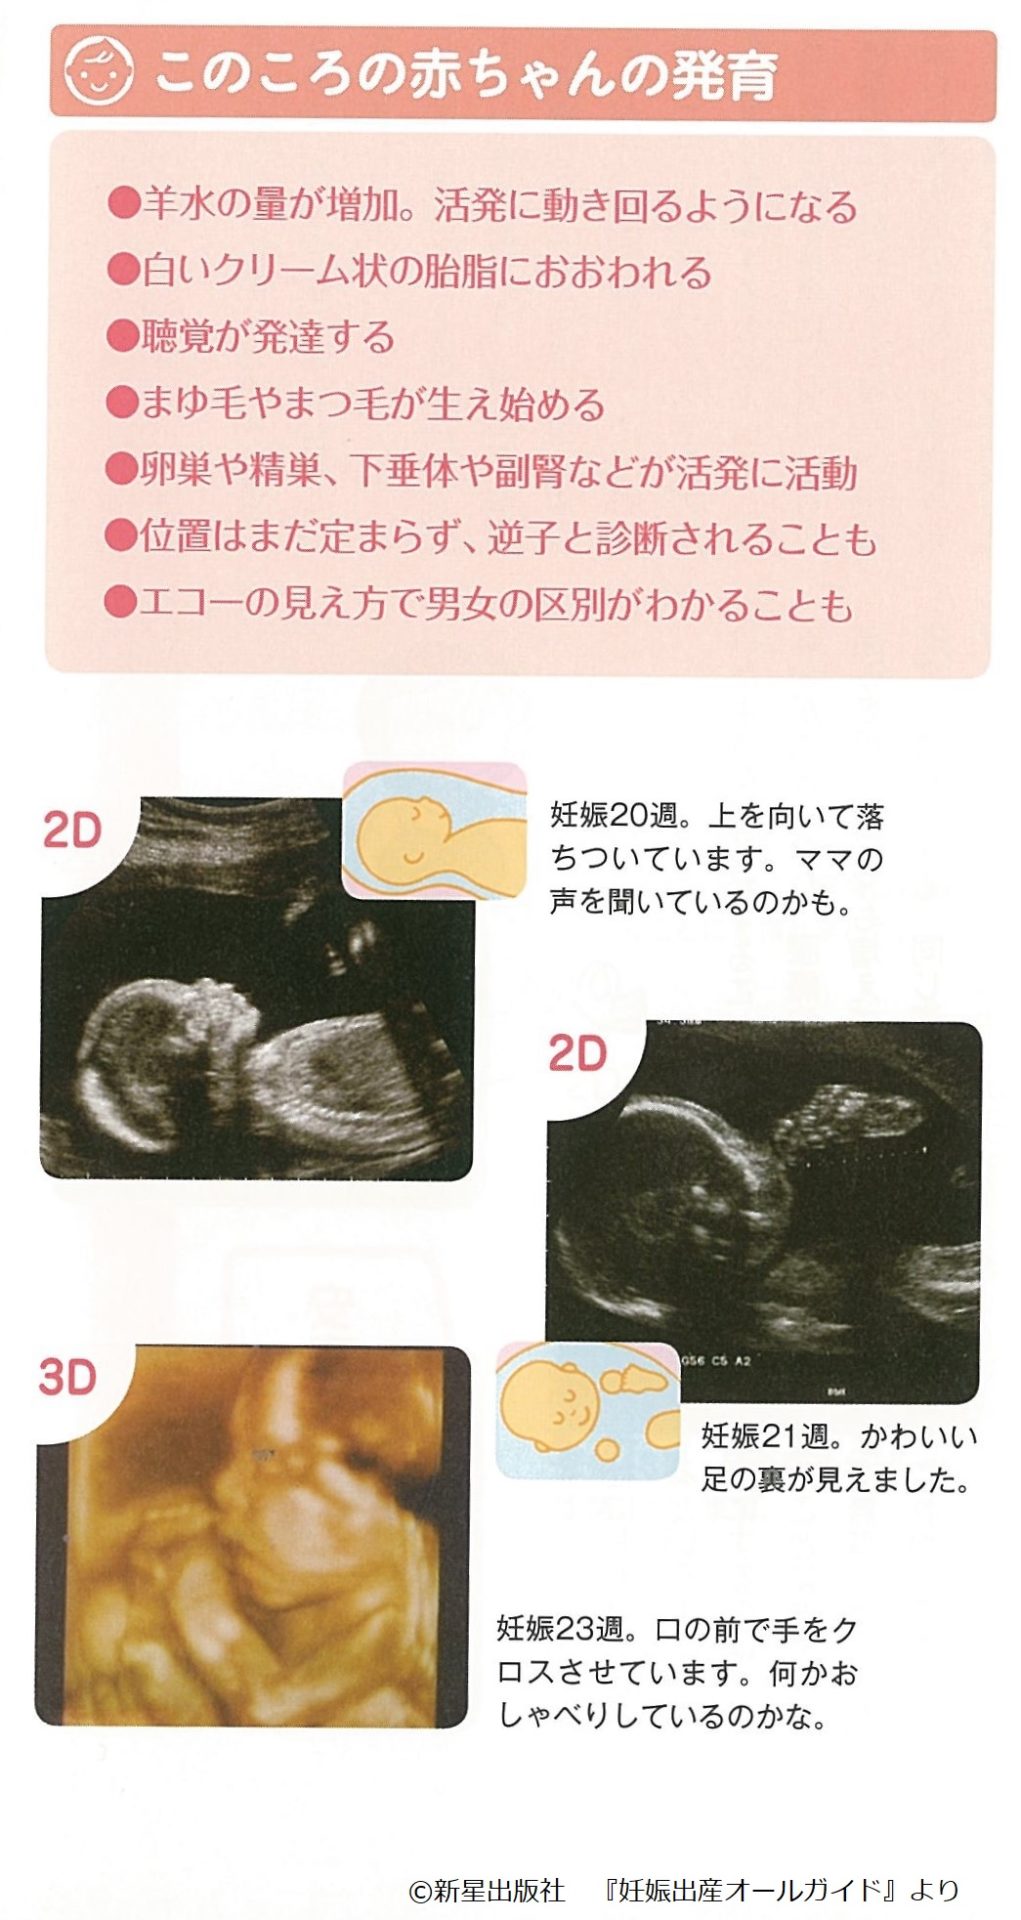 妊娠したら知っておきたい ママの体と赤ちゃんの様子 中期 23週 妊娠6カ月 Fun Life ファンライフ